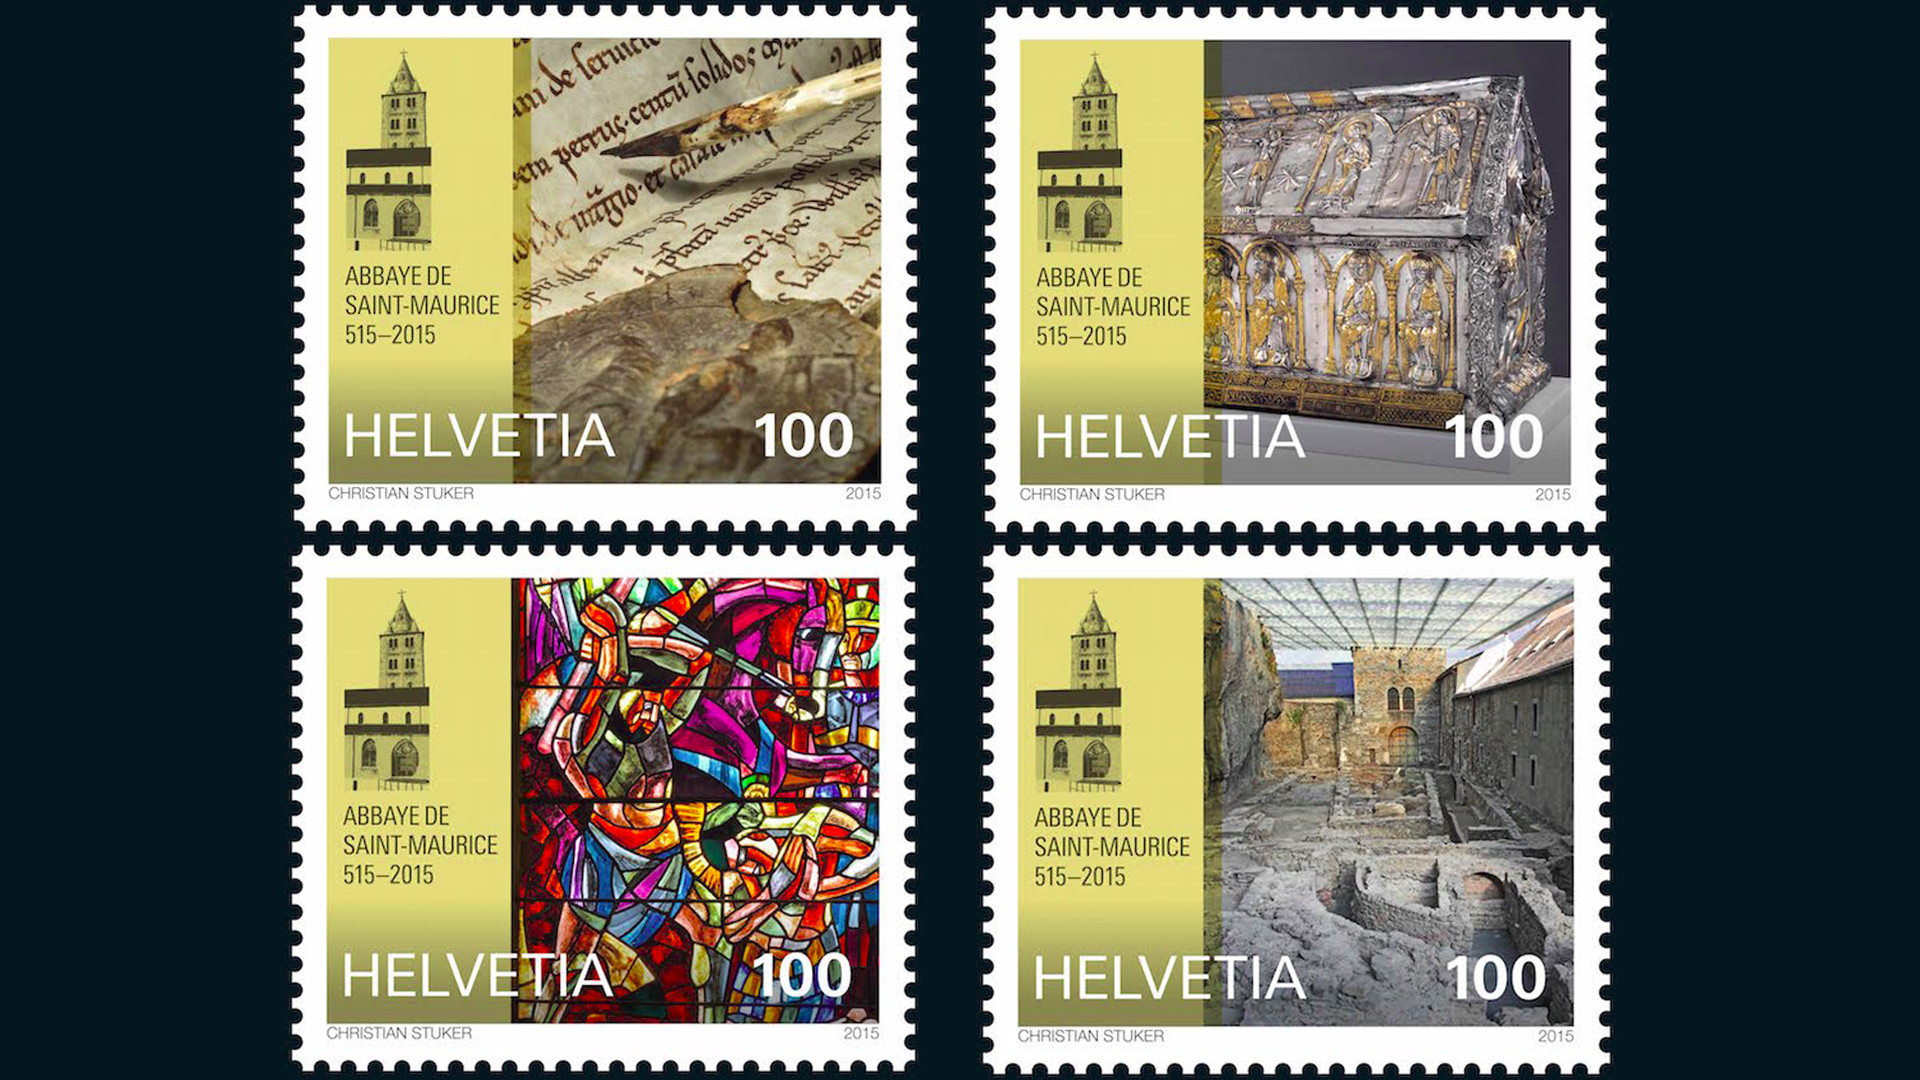 La Poste émet quatre timbres pour marquer le Jubilé de l'Abbaye de Saint-Maurice